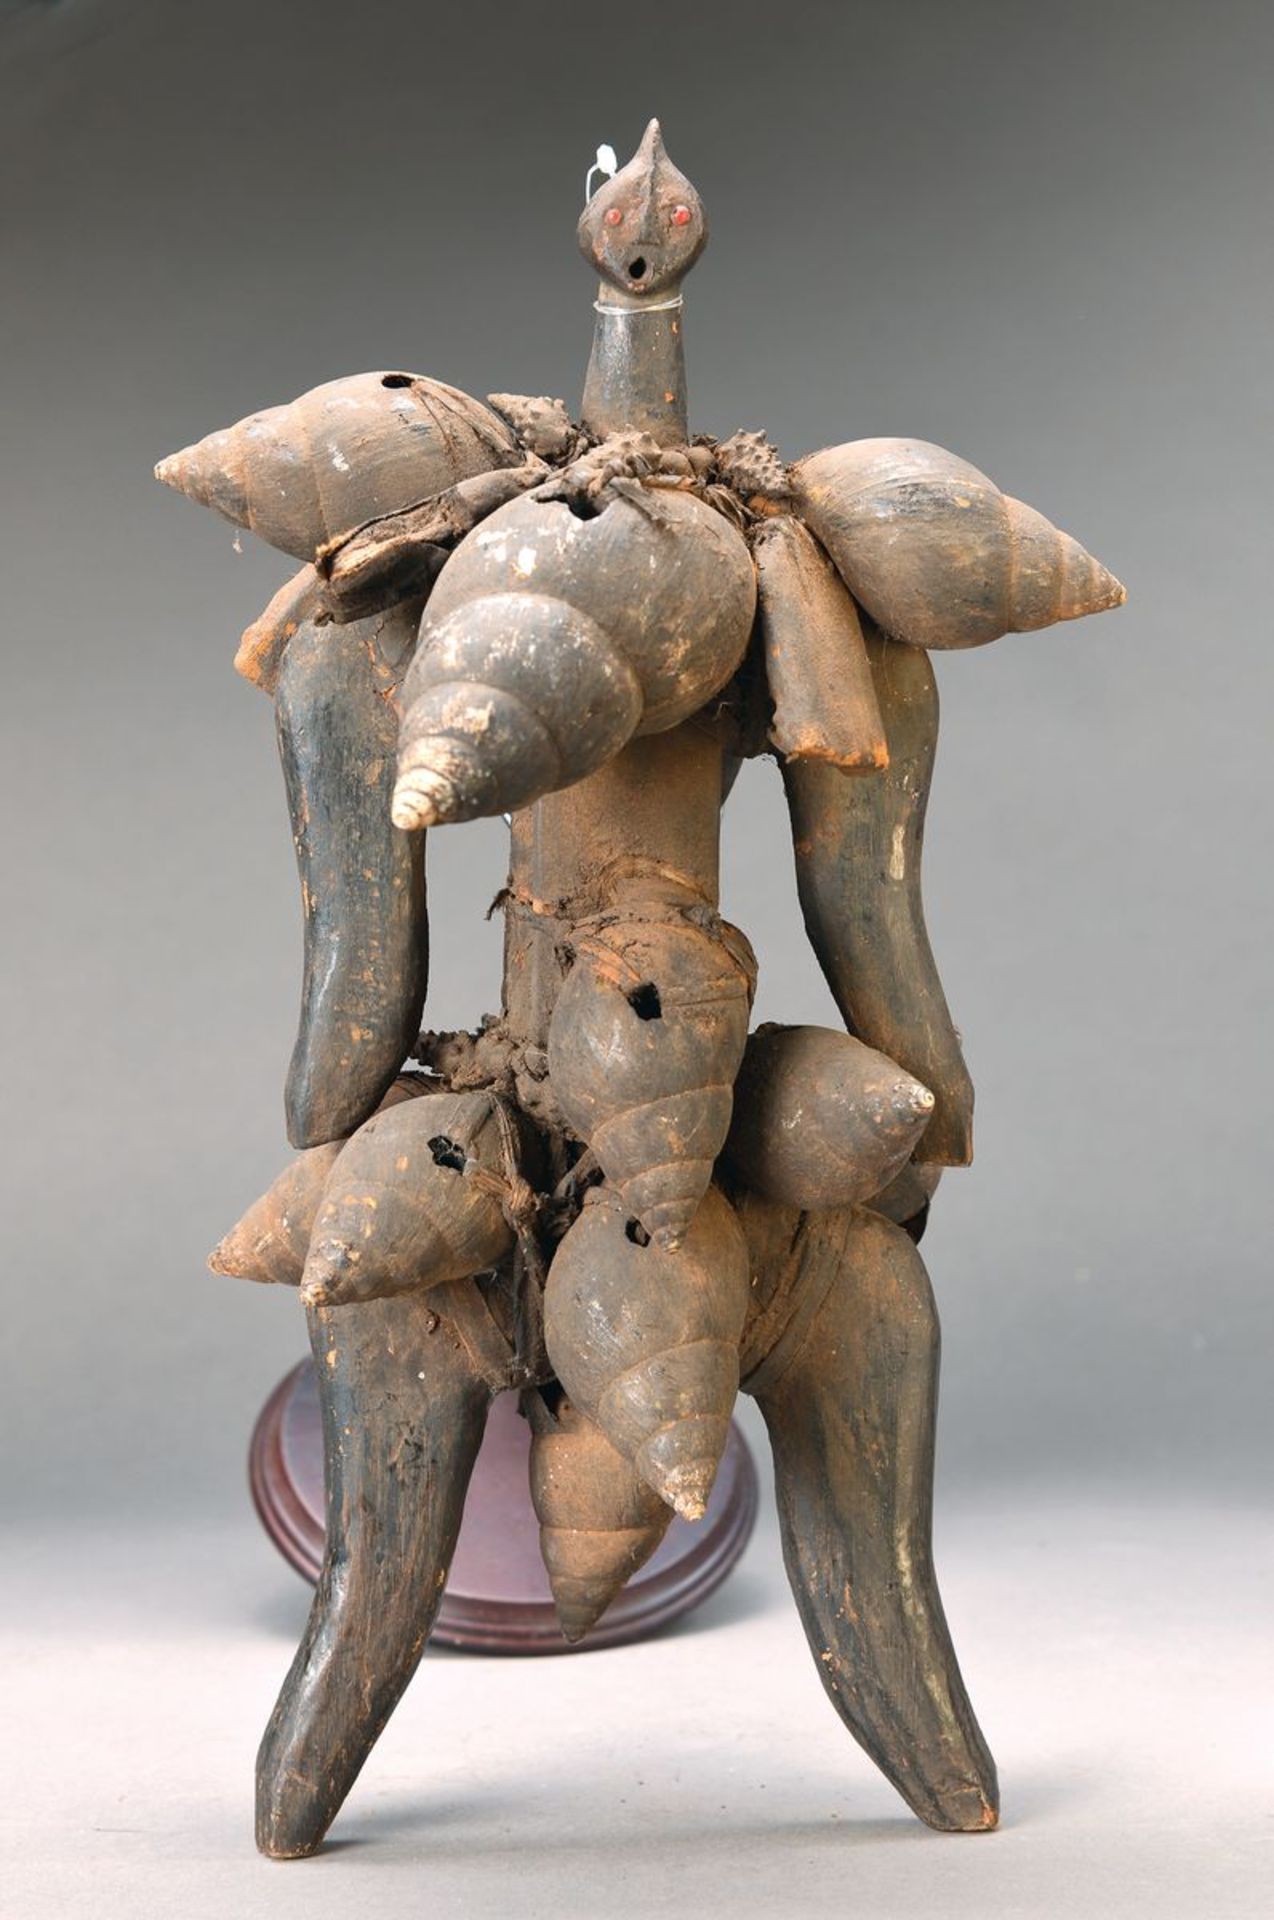 Fetisch, Dowago, Kamerun, ca. 40-50 Jahre alt, Holz/Muschel/Stoff, stark stilisierte Gestalt